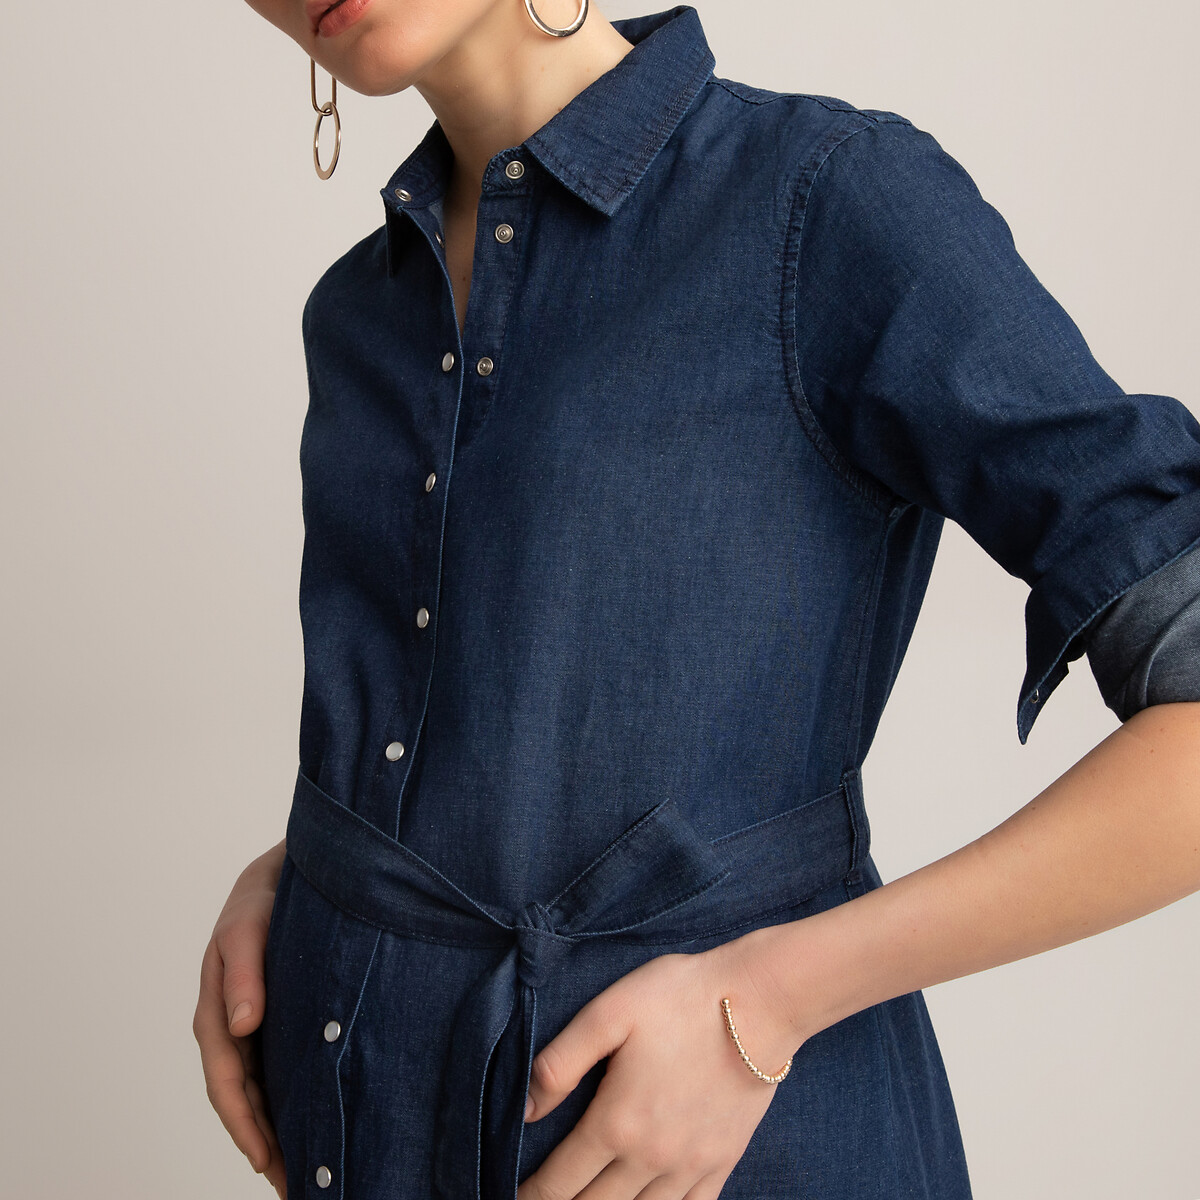 Платье-рубашка LaRedoute Для периода беременности из легкой джинсовой ткани 38 (FR) - 44 (RUS) синий, размер 38 (FR) - 44 (RUS) Для периода беременности из легкой джинсовой ткани 38 (FR) - 44 (RUS) синий - фото 3